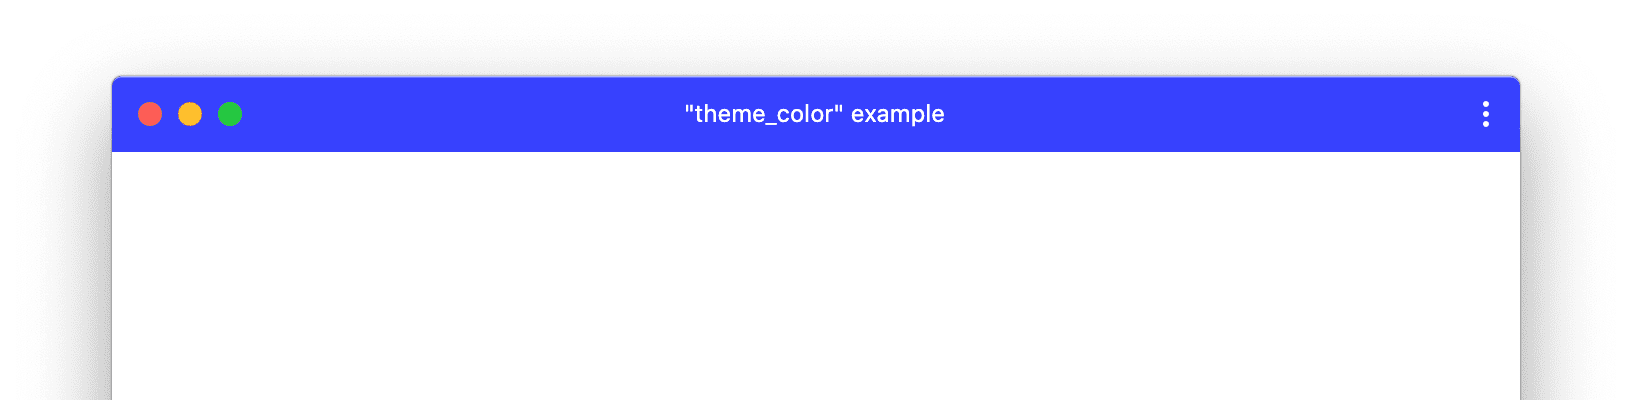 Um exemplo de janela de PWA com theme_color personalizado.